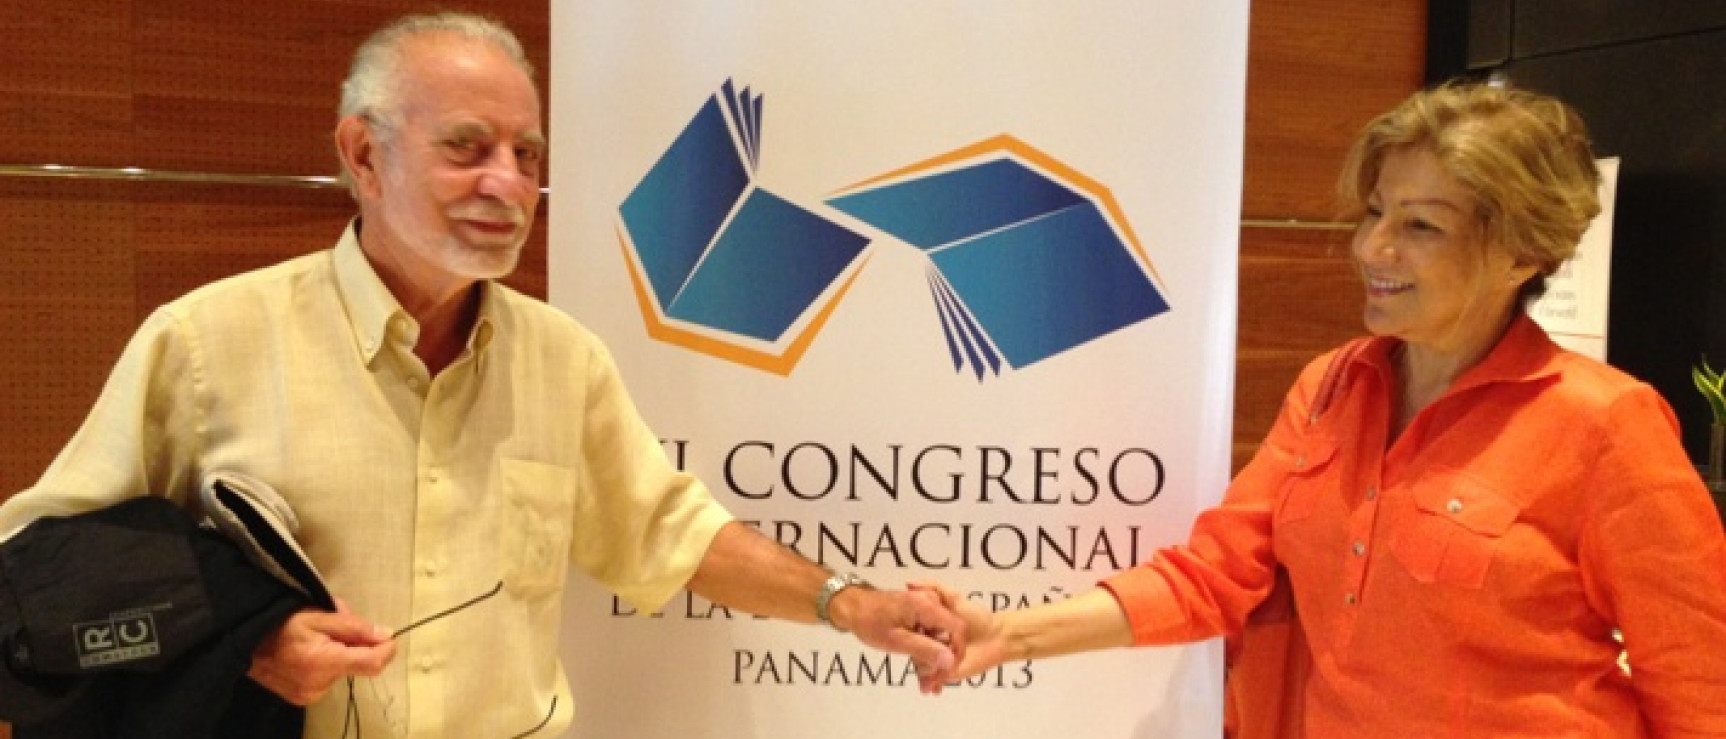 La directora de la Academia Panameña felicita a José María Merino.